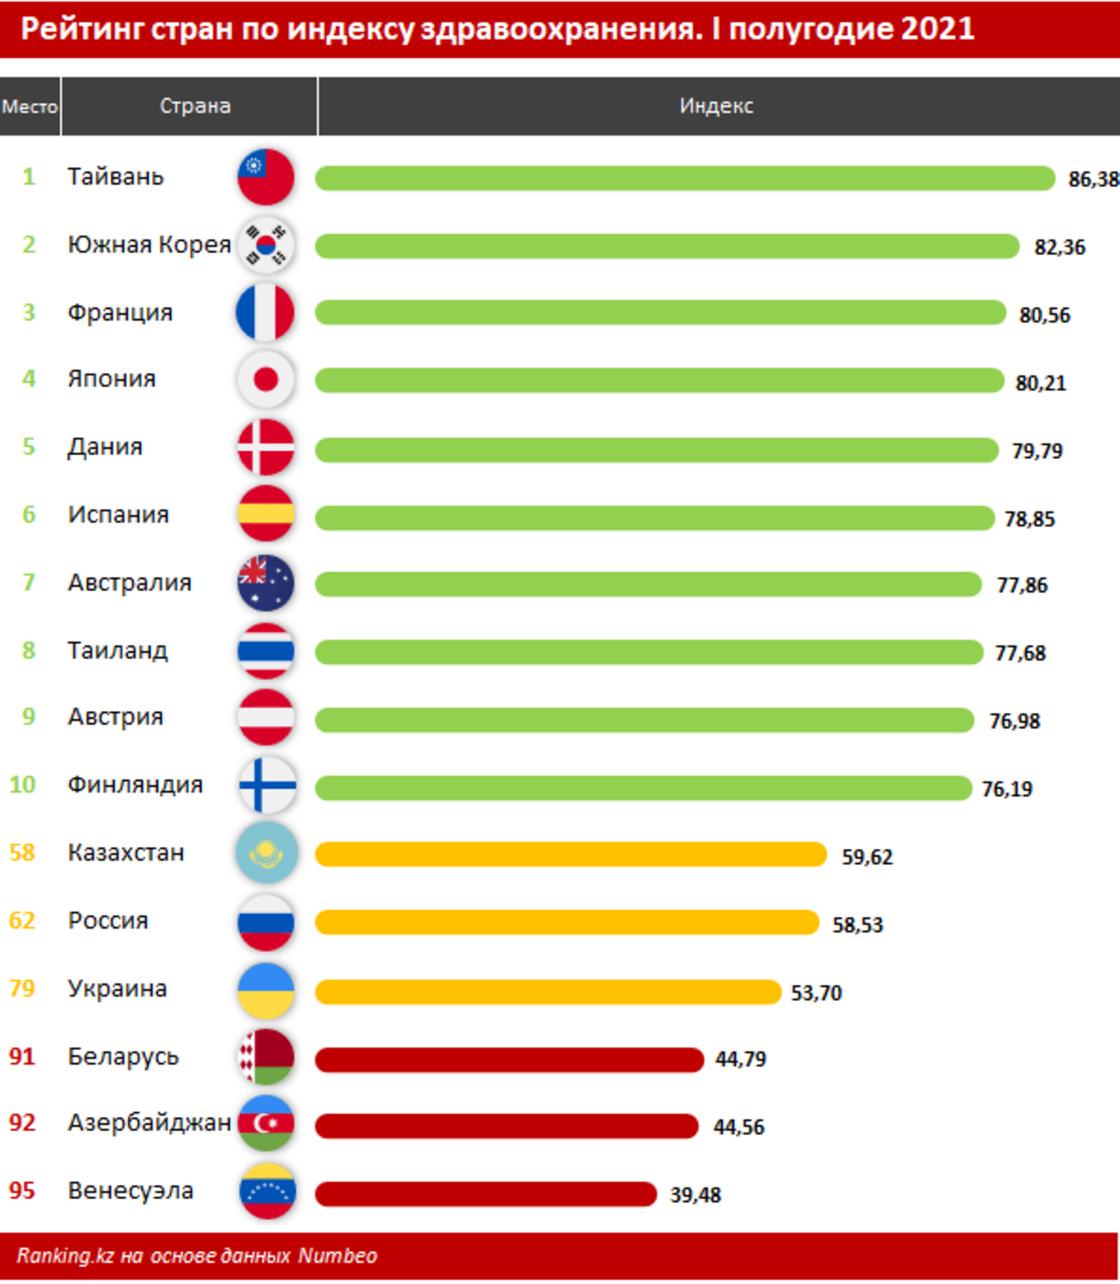 Рейтинг стран по индексу здравоохранения. I полугодие 2021 года